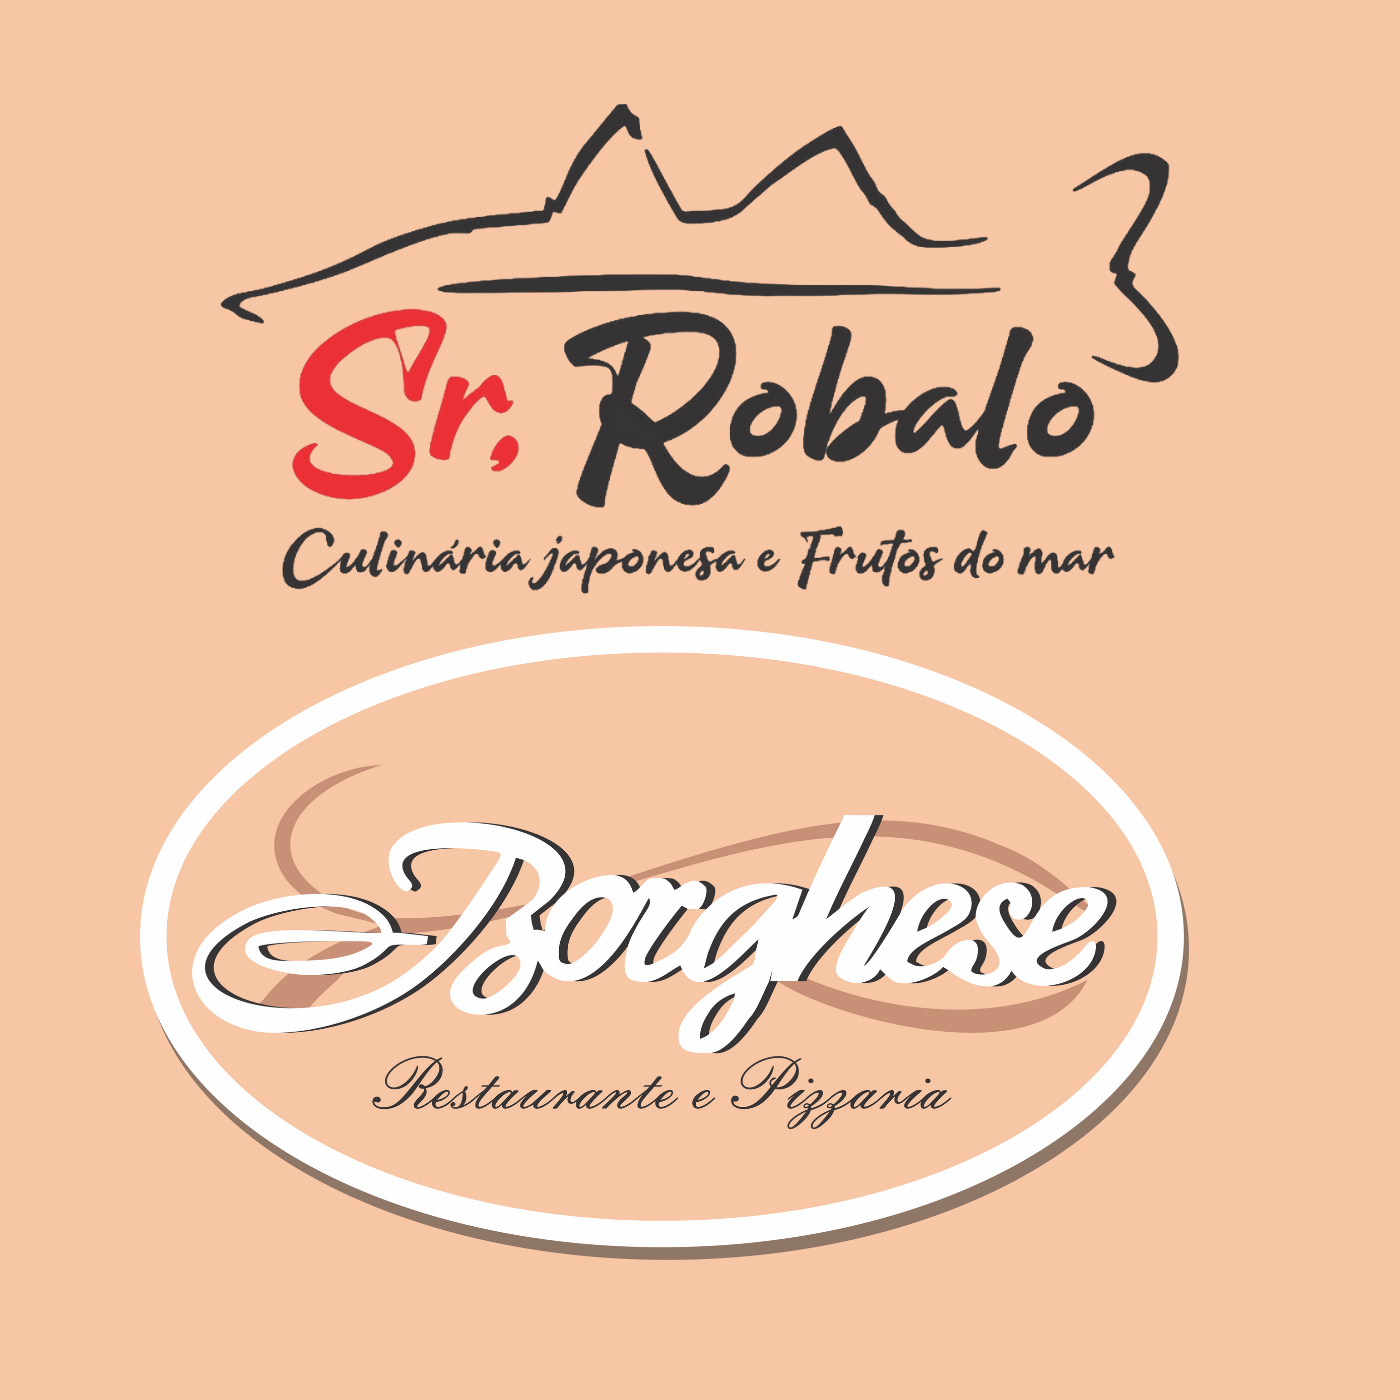 SR. ROBALO  Sushi Bar  -  Restaurante Borghese e Pizzaria  em Guarujá